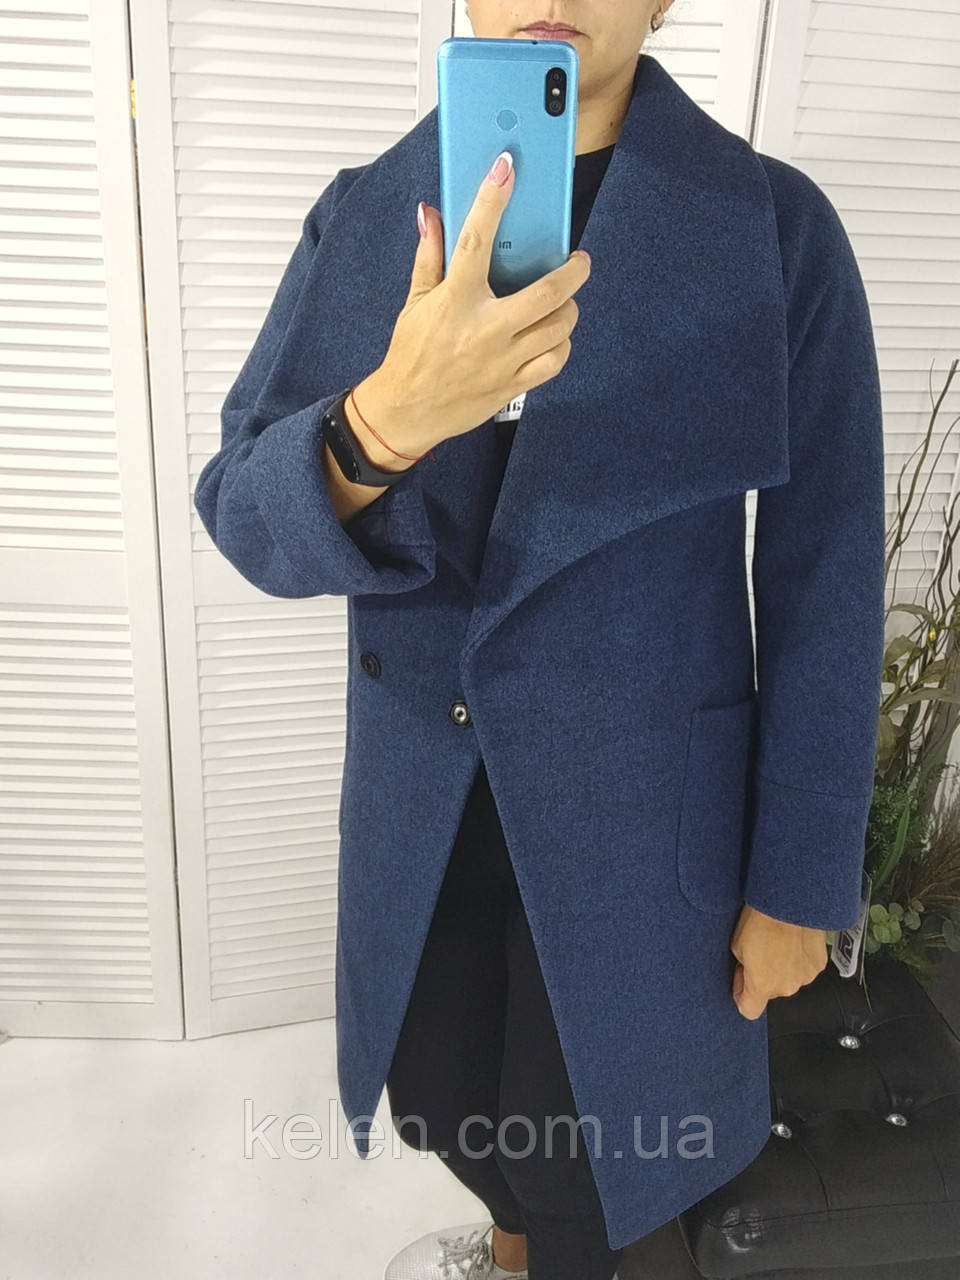 Модне жіноче пальто з відкладним коміром в синьому кольорі / розмір 44